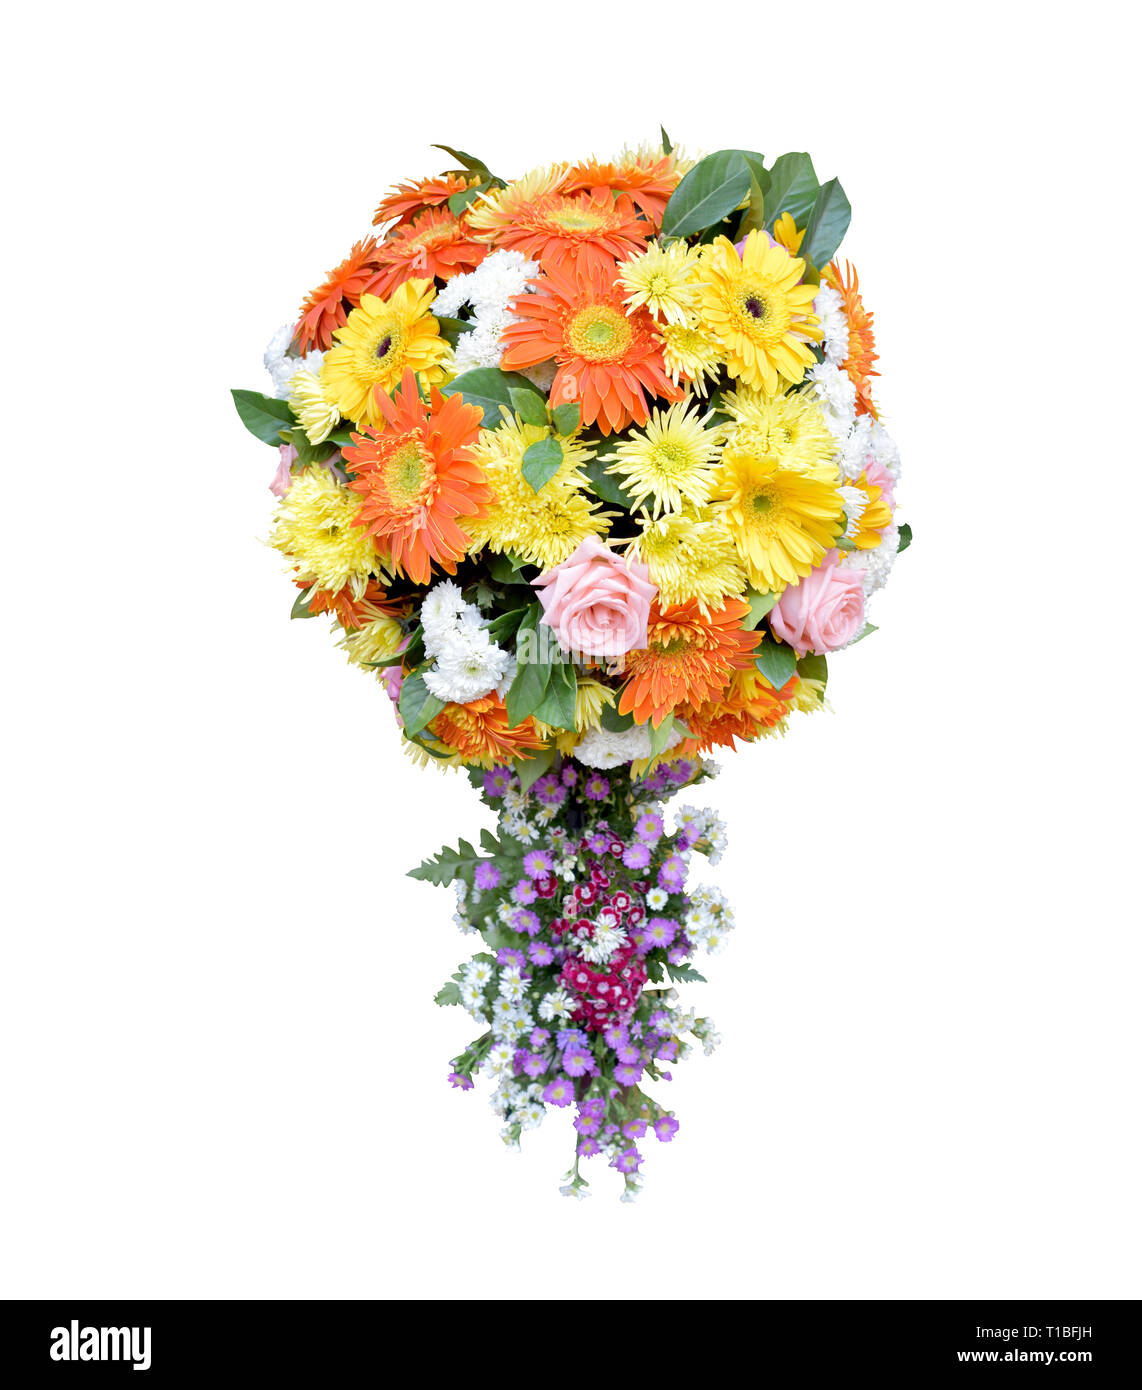 Forma sferica bouquet di fiori con appendice isolato su sfondo bianco, bellissimo design fiorista di fiori di sfera decorativa per in buona occasione, Foto Stock